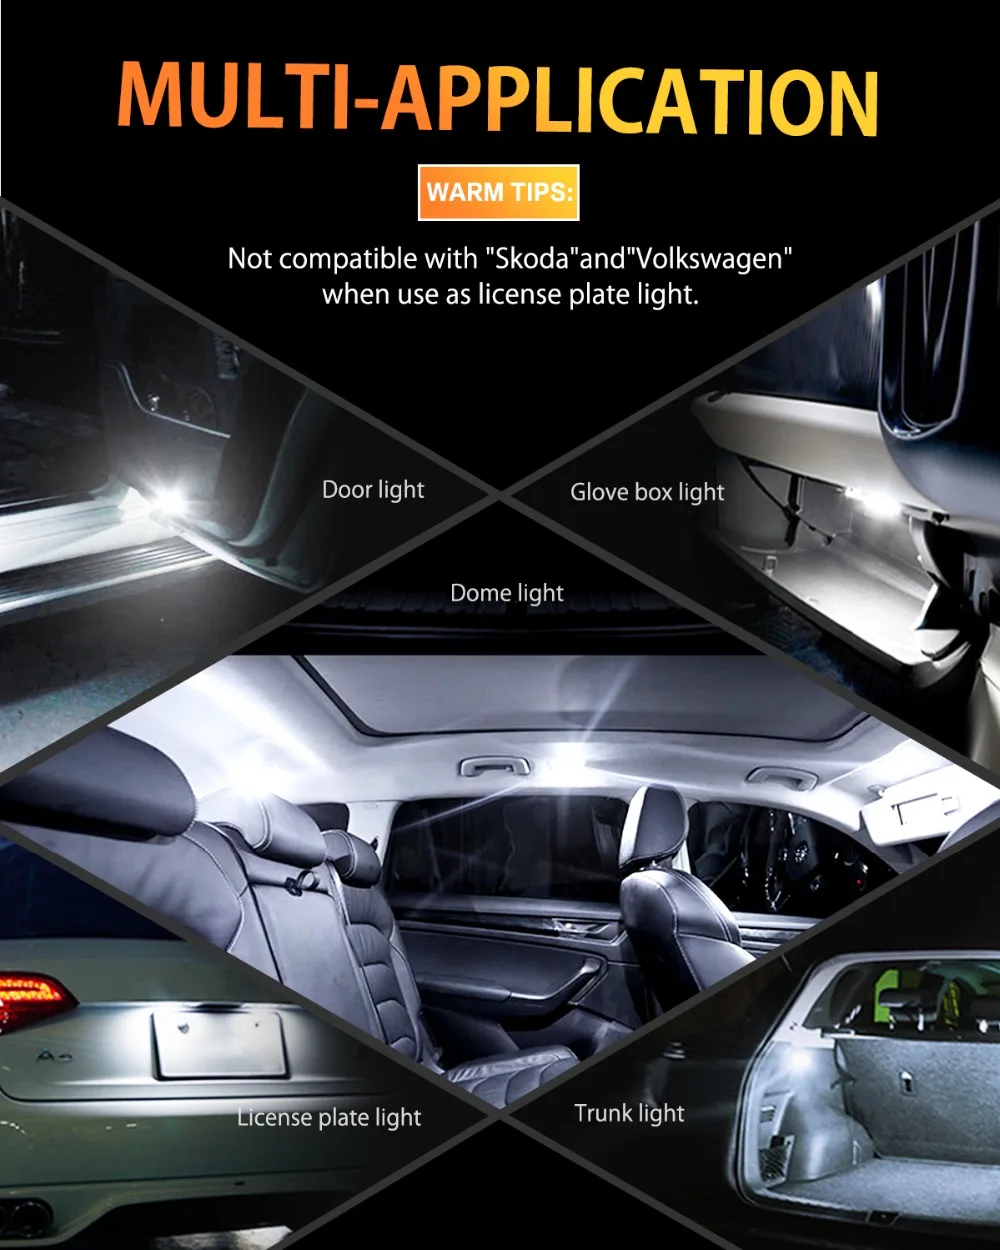 10 шт. W5W T10 Светодиодный лампочки Canbus 168 194 светодиодный интерьер автомобиля светильник для Audi A4 B6 B8 A5 A6 C5 C6 A7 A8 Q3 Q5 Q7 80 A3 S3 S4 S5 S6 S8